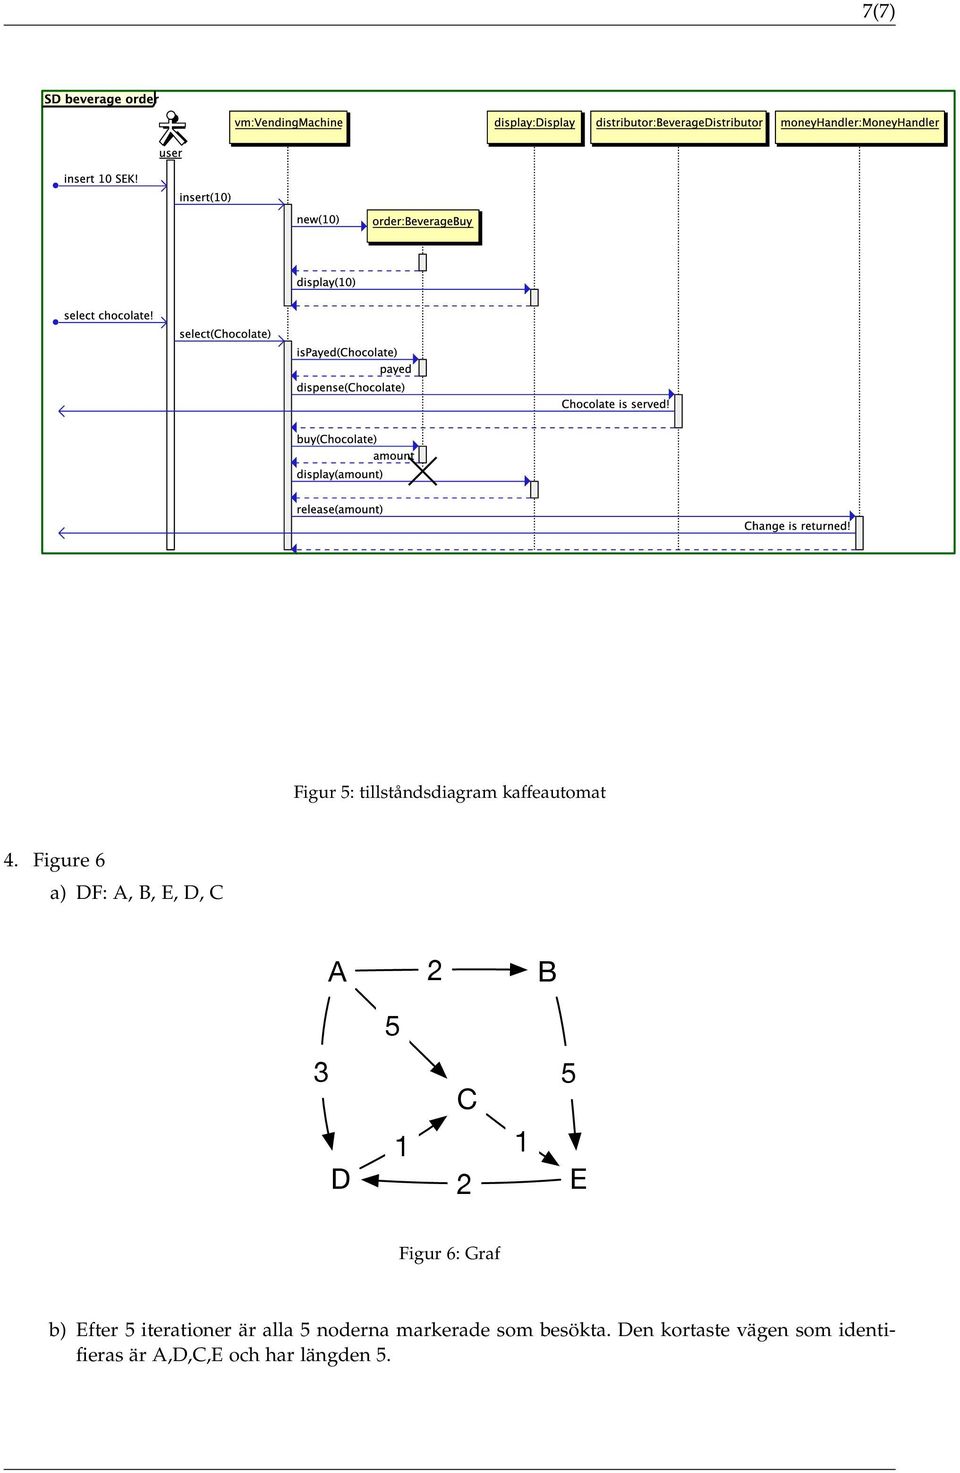 6: Graf b) Efter 5 iterationer är alla 5 noderna markerade